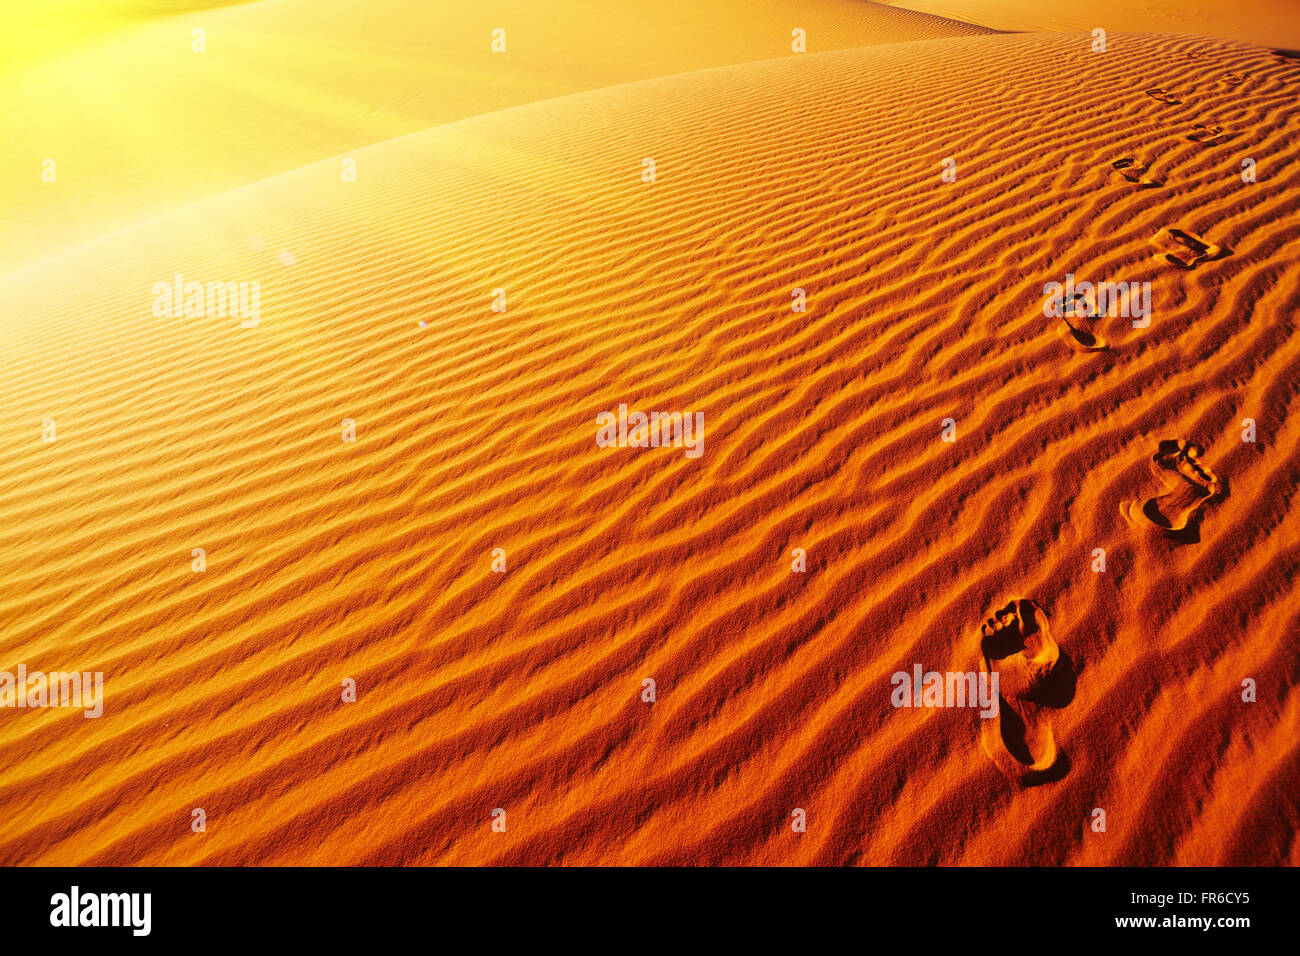 Empreintes sur dune de sable, désert du Sahara, l'Algérie Banque D'Images